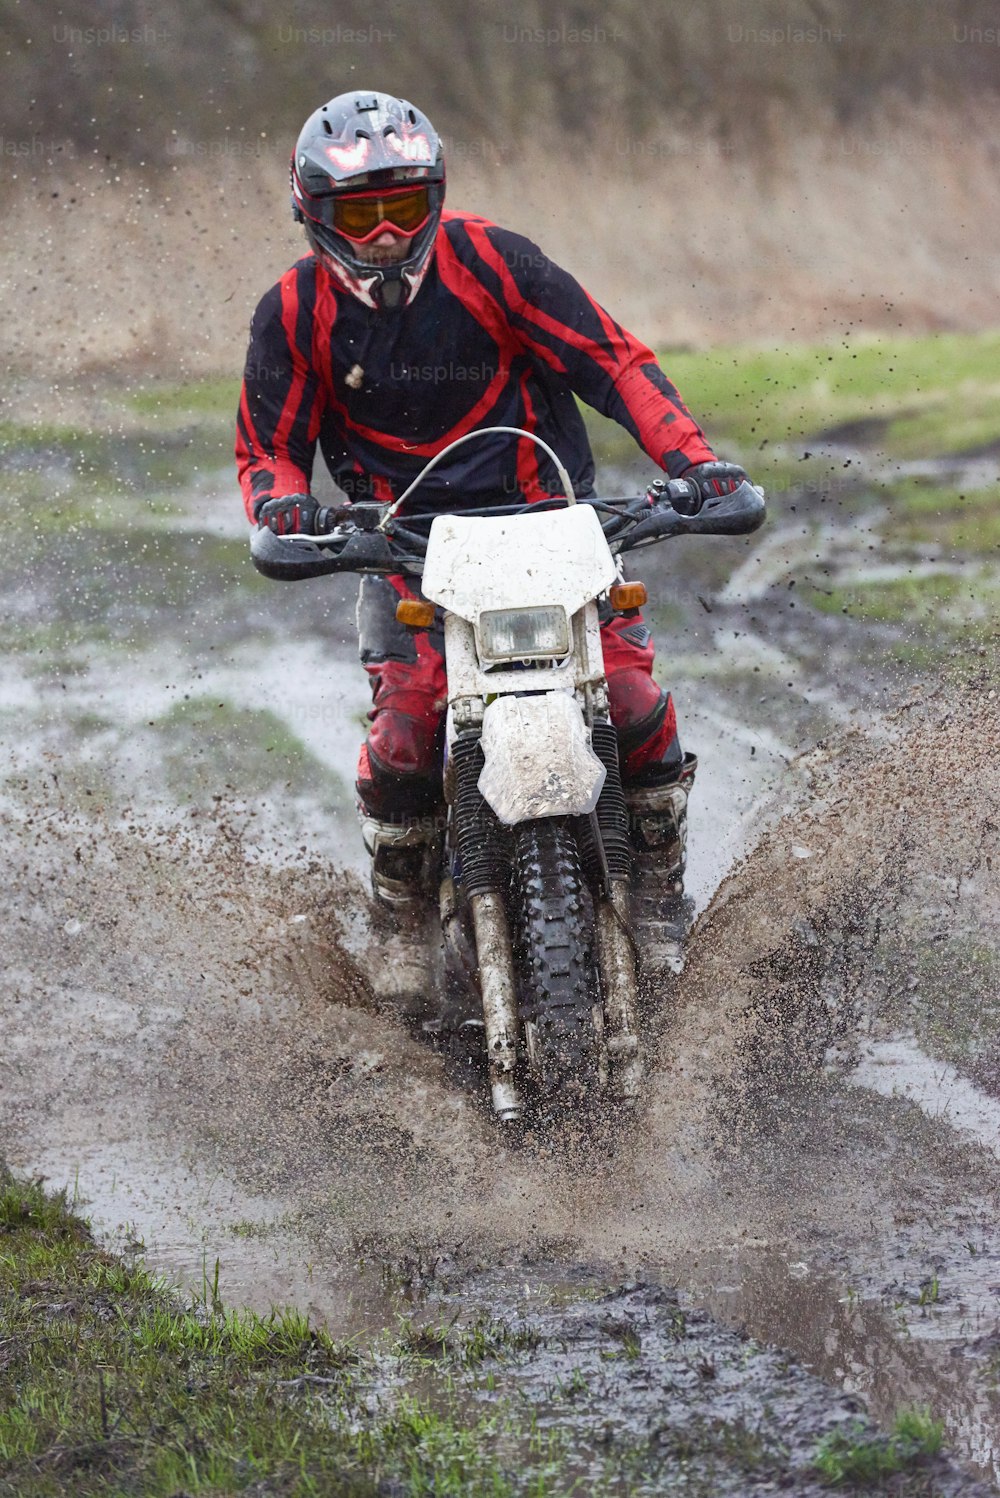 Course extrême sur piste de boue avec un professionnel masculin roulant dans une flaque d’eau sale